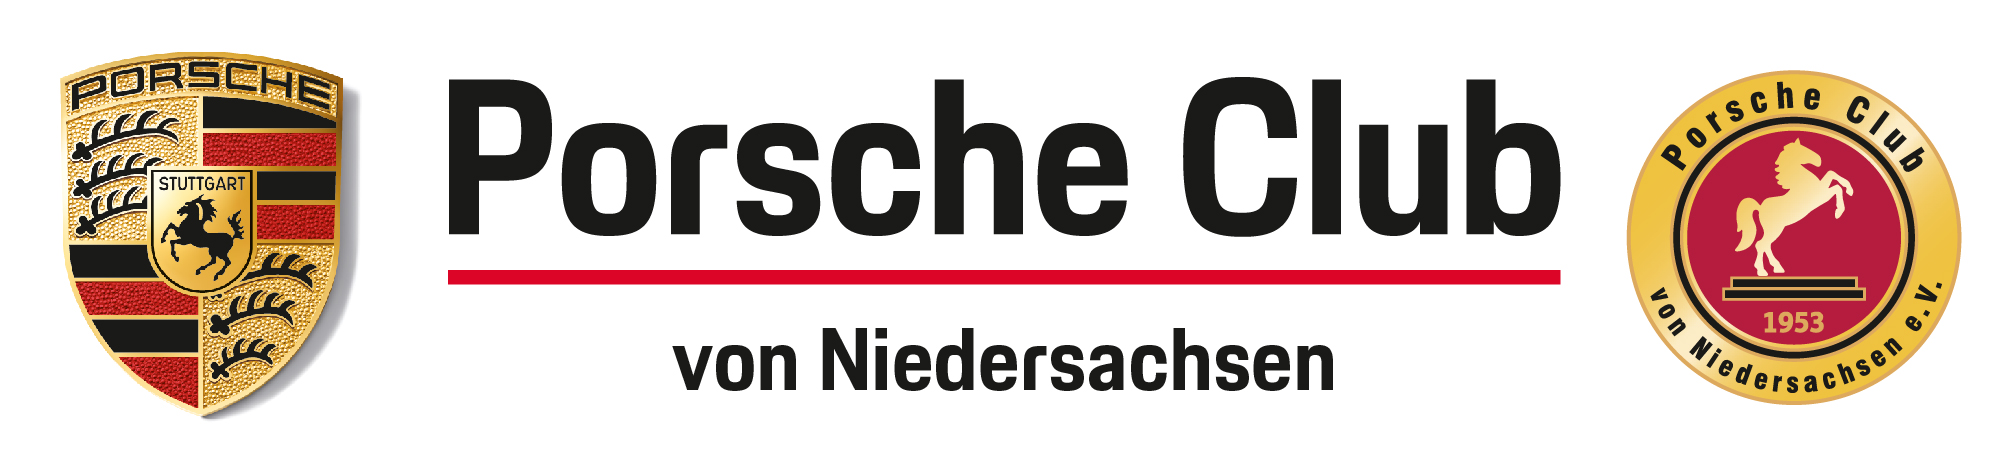 Porsche Club von Niedersachsen e.V.